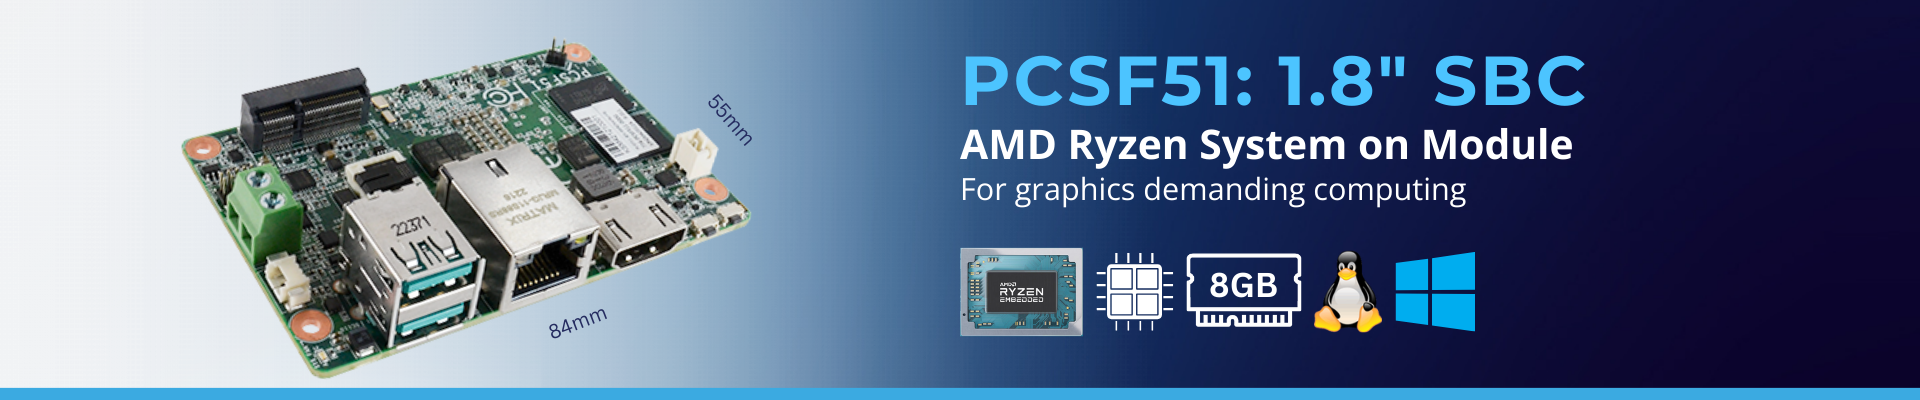 PCSF51: AMD Ryzen Embedded R2000 1.8